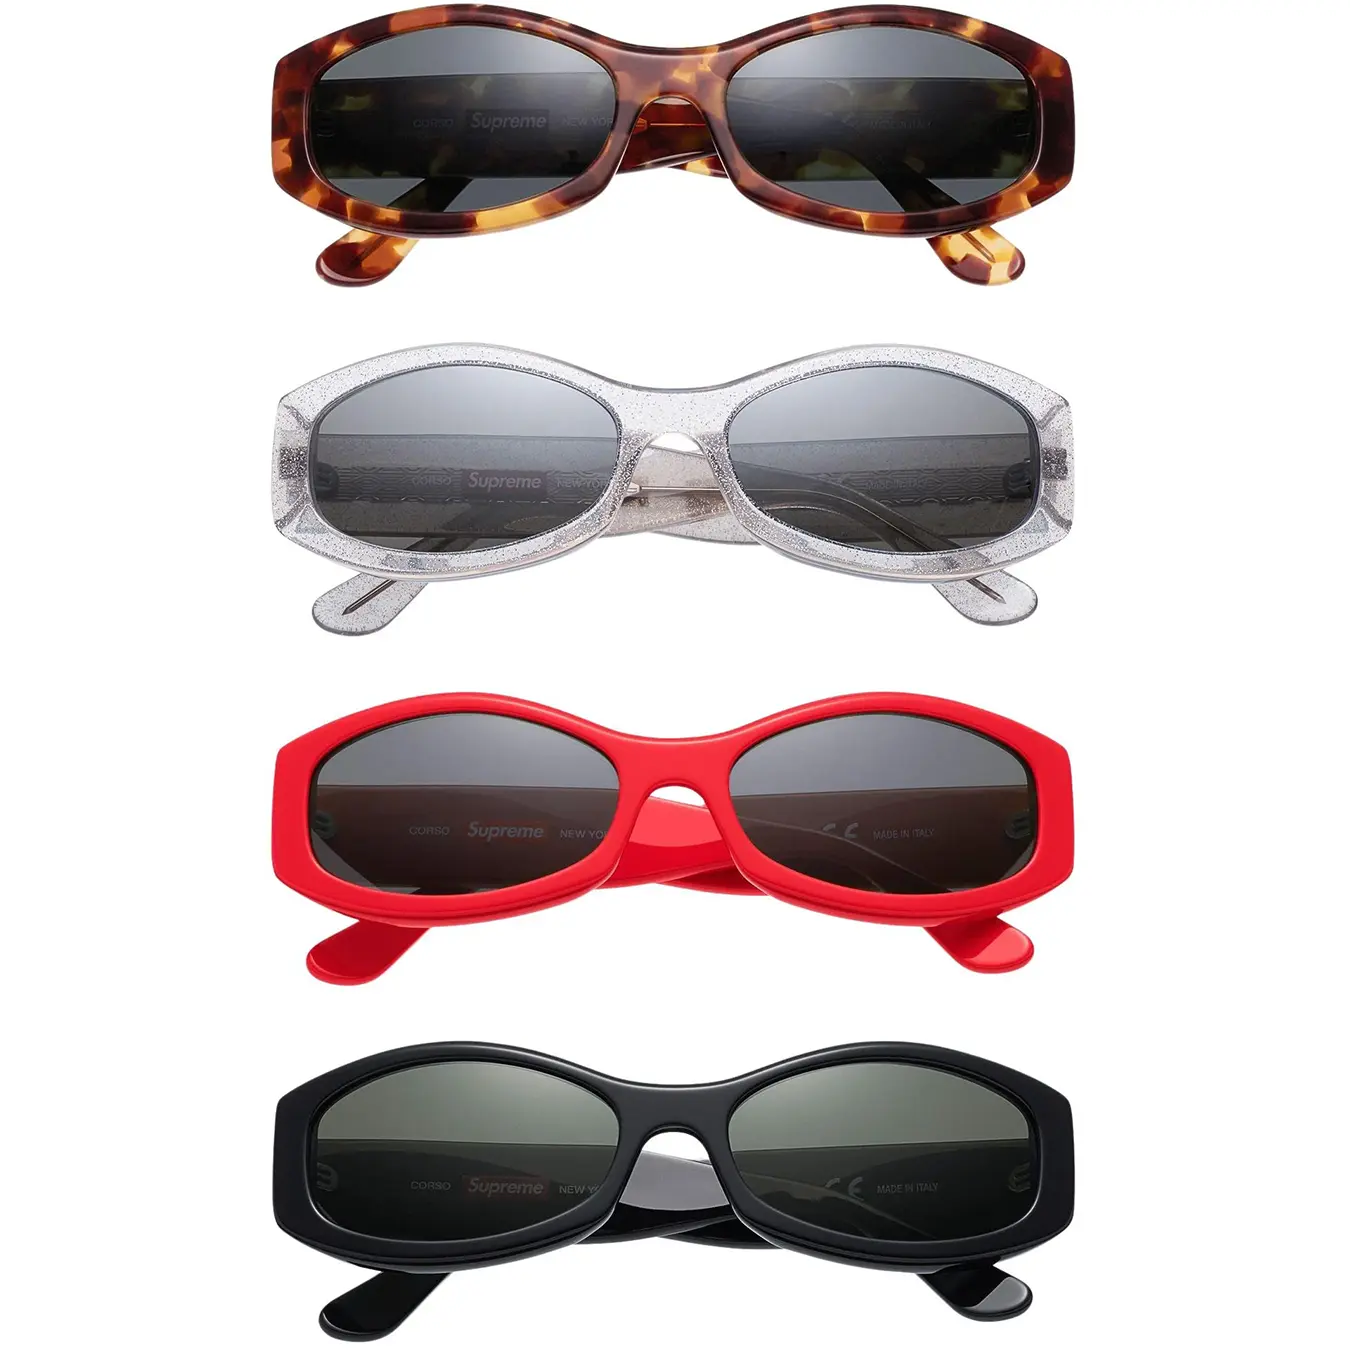 Corso Sunglasses | Supreme 23ss